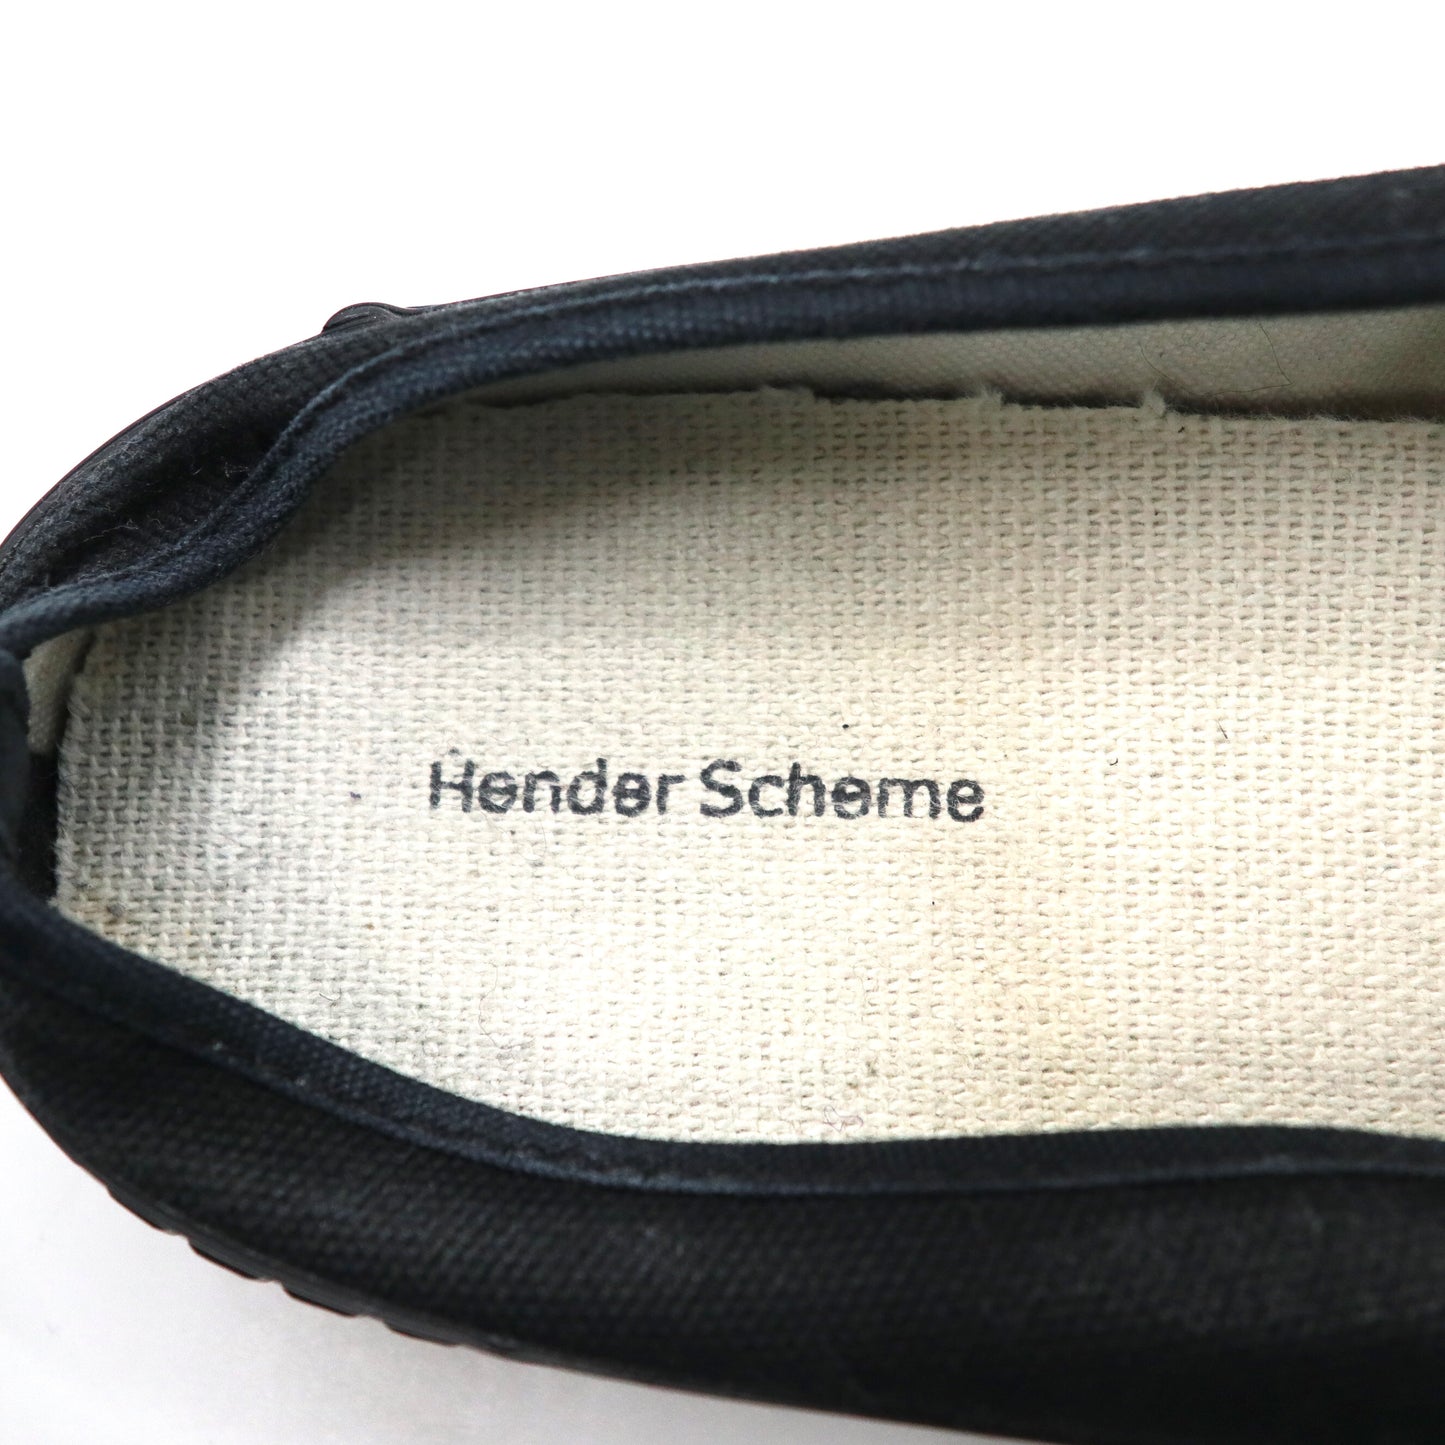 Hender Scheme タッセルローファー ミュール 27.5-28cm ブラック キャンバス PARALLEL / PEAK with tassels 8AHR 日本製